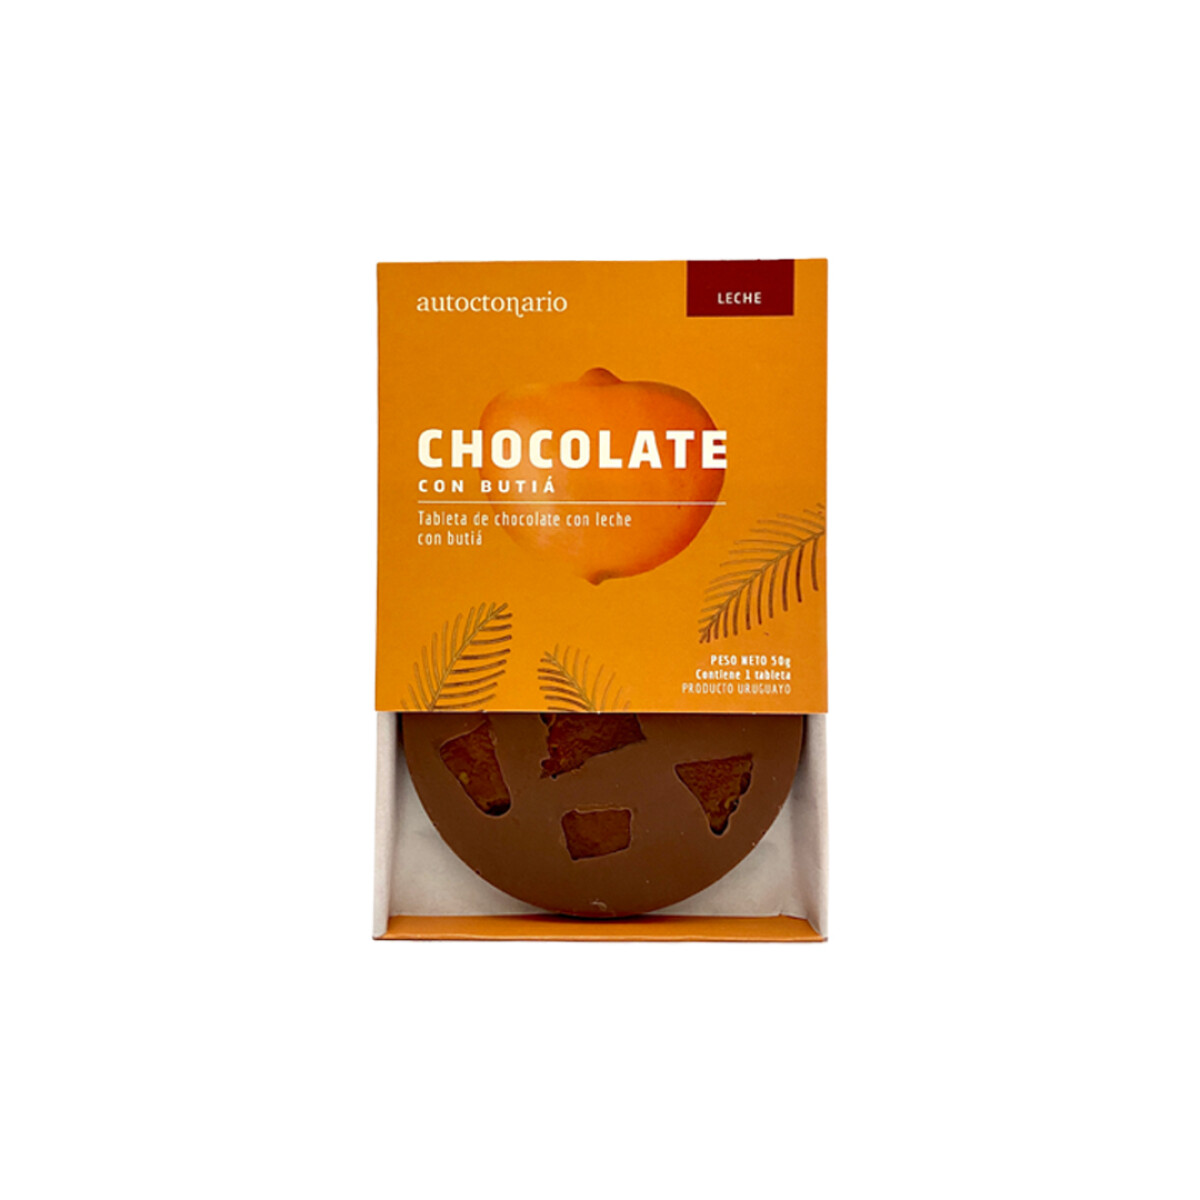 Chocolate Con Leche Y Butia Autoctonario 